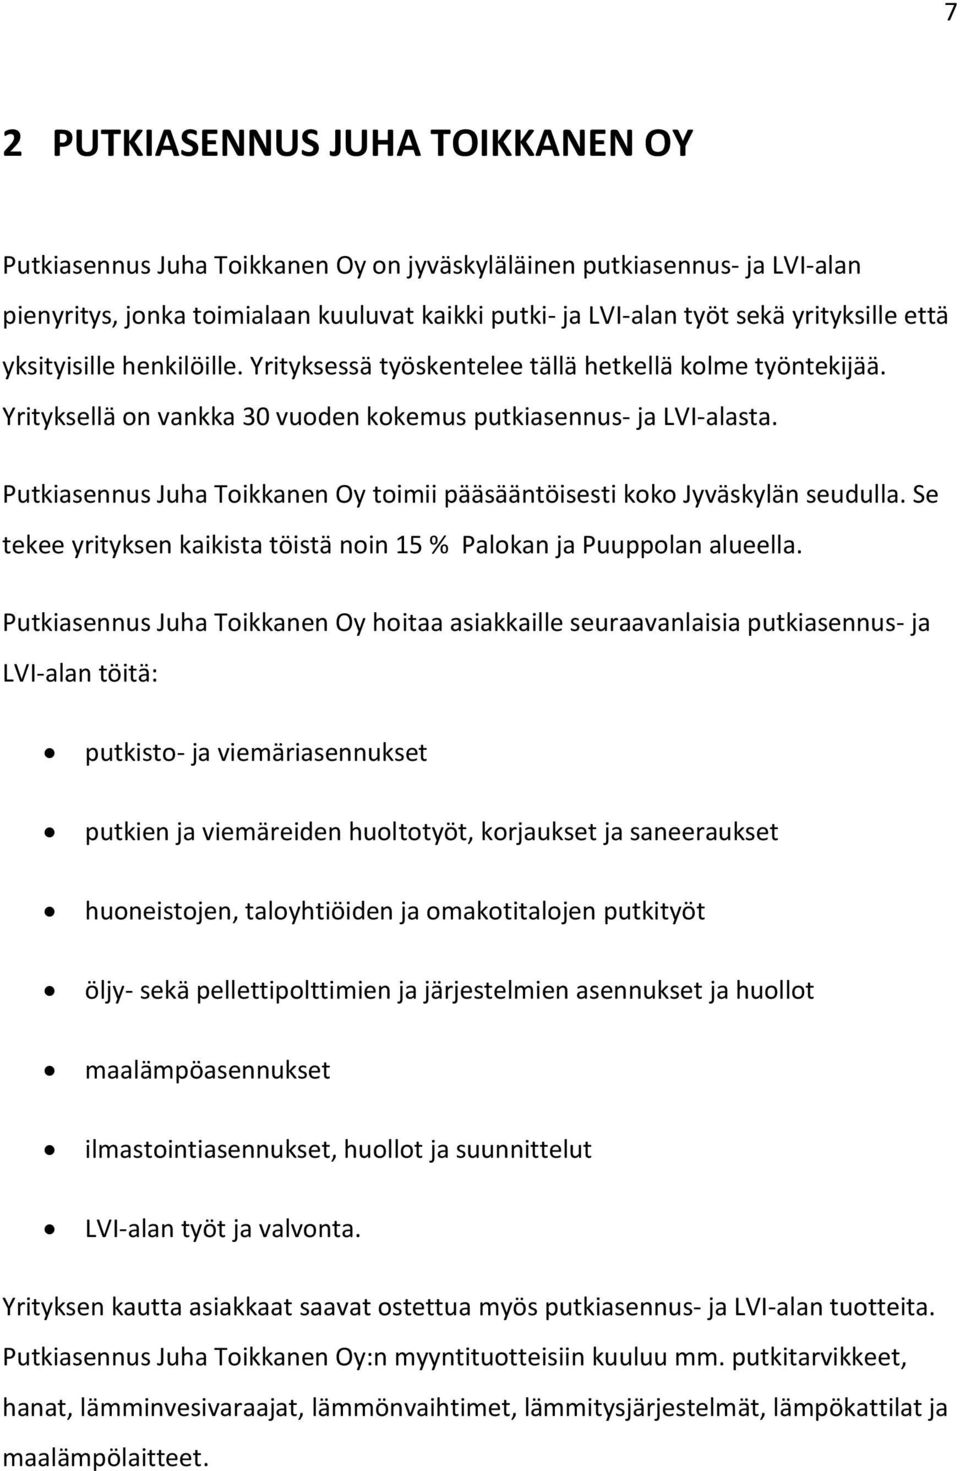 Putkiasennus Juha Toikkanen Oy toimii pääsääntöisesti koko Jyväskylän seudulla. Se tekee yrityksen kaikista töistä noin 15 % Palokan ja Puuppolan alueella.